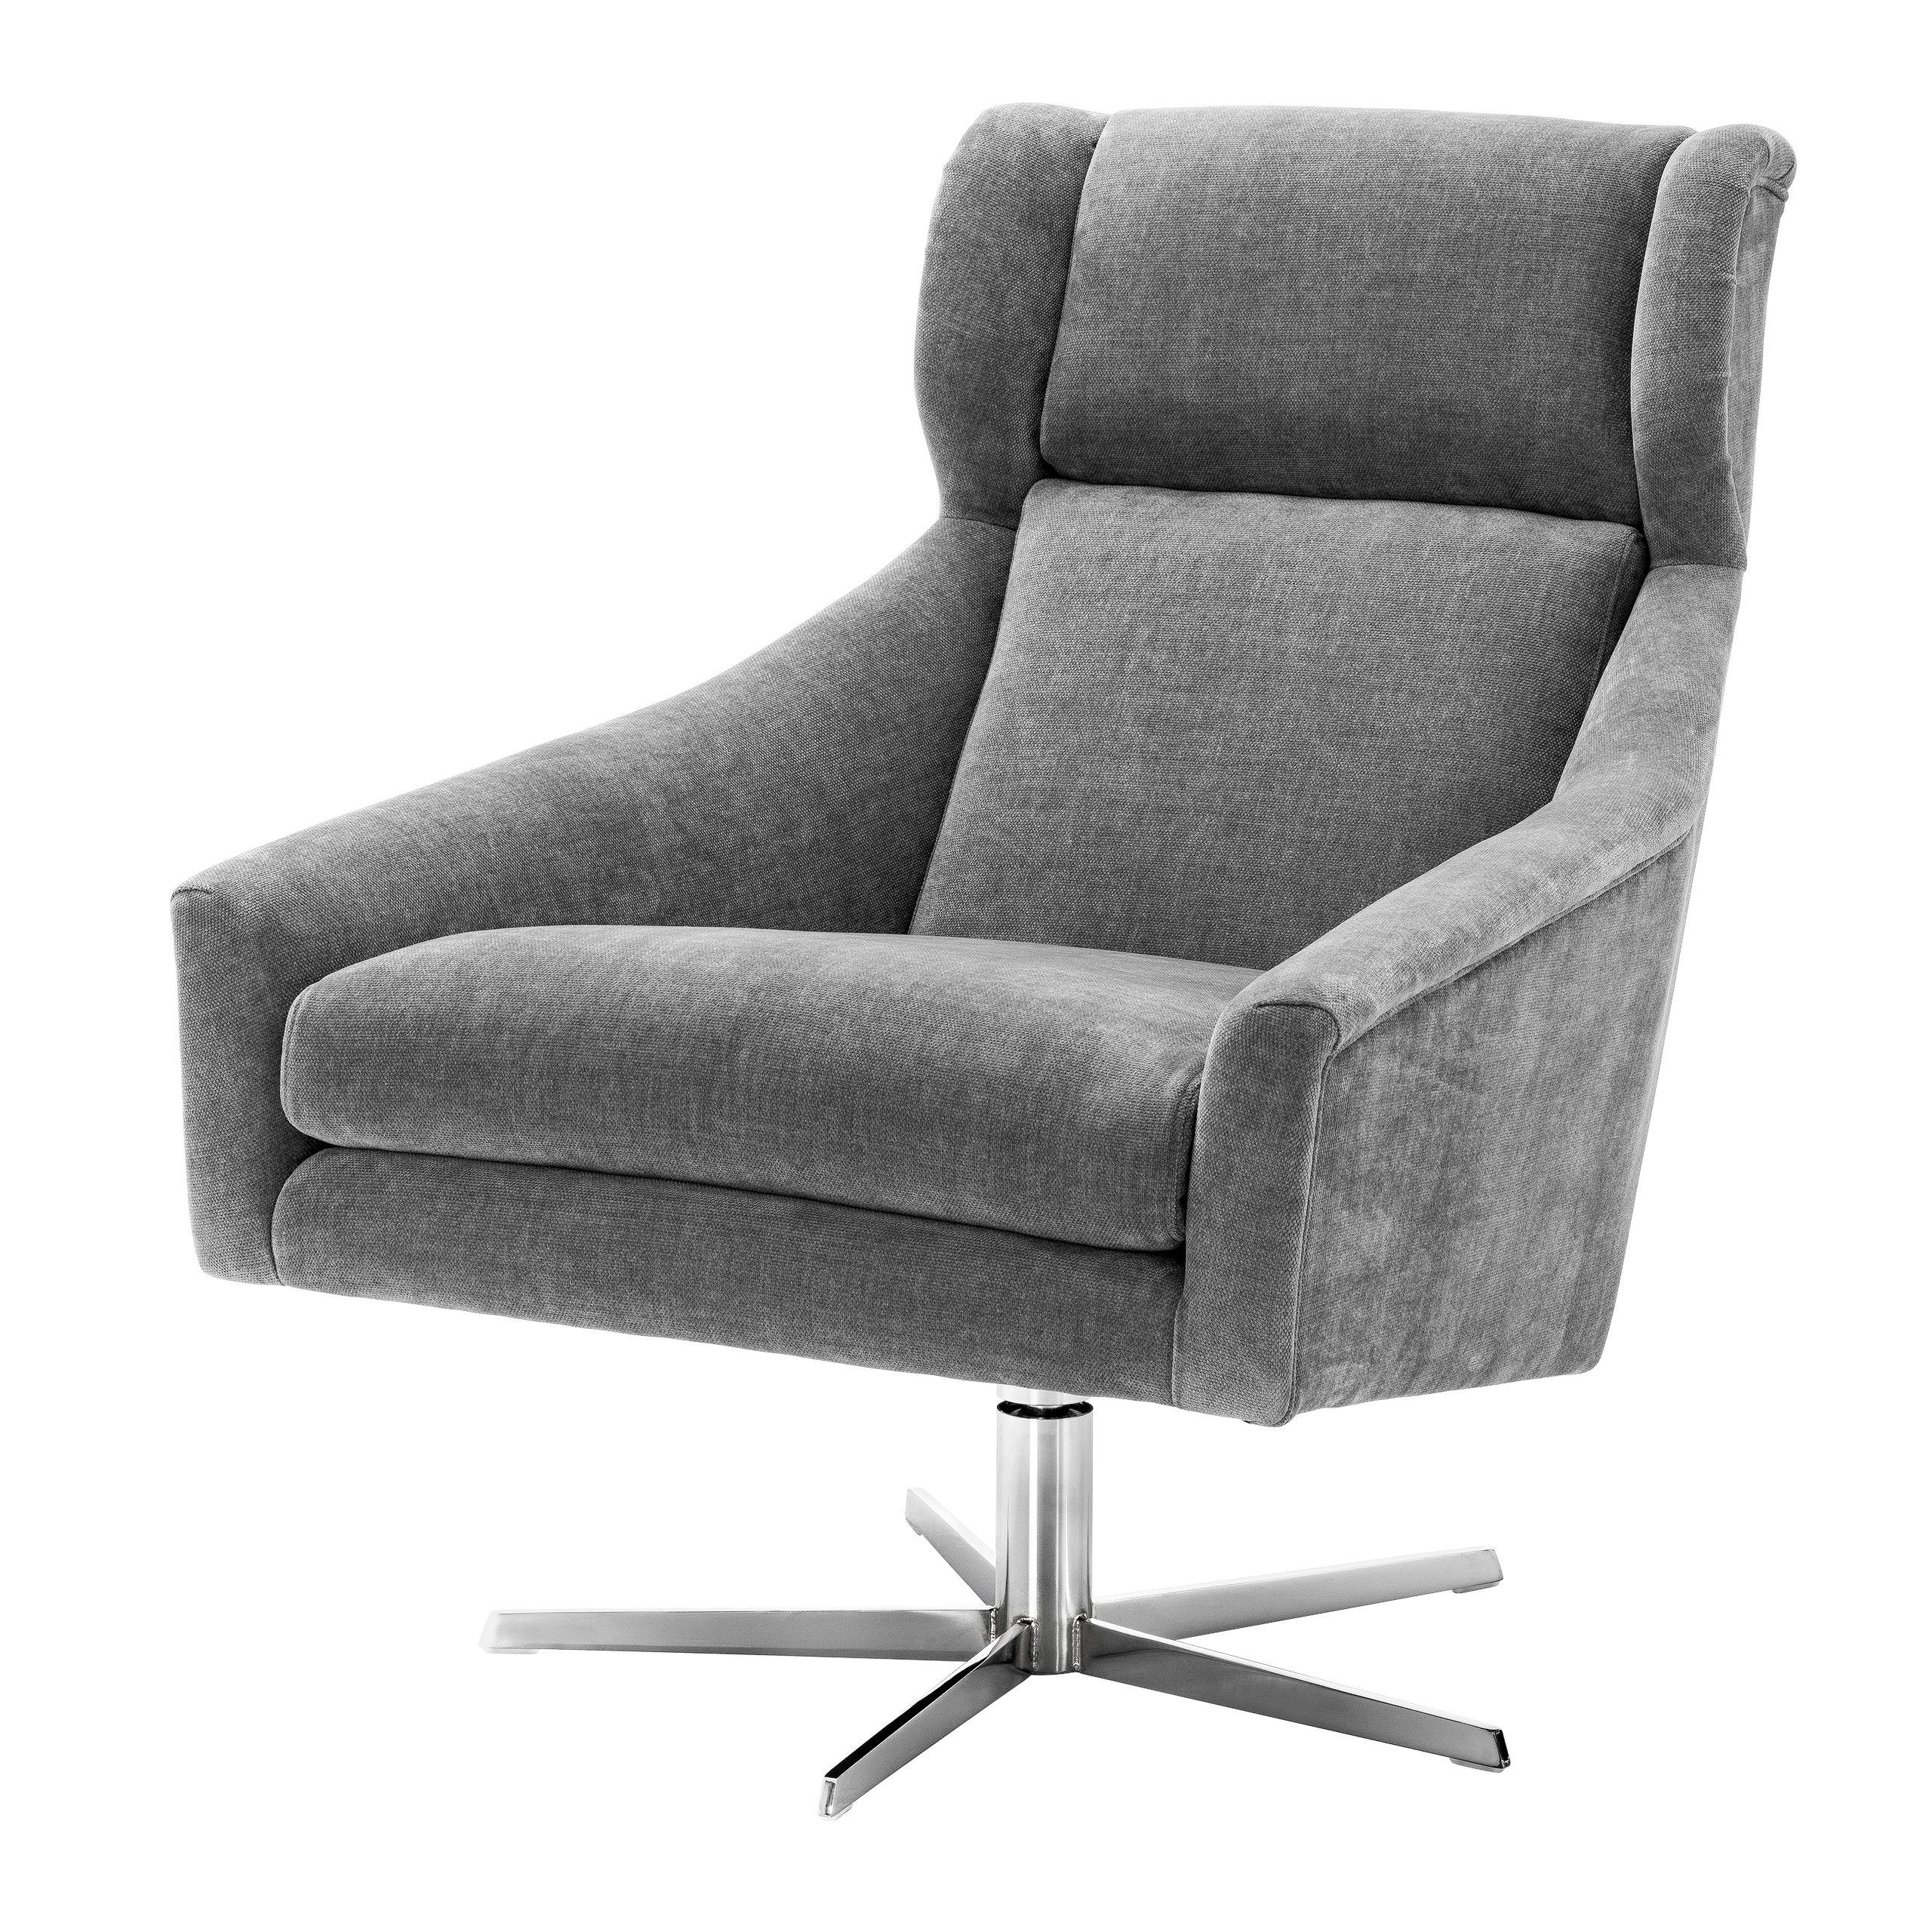 Купить Крутящееся кресло Swivel Chair Nara в интернет-магазине roooms.ru